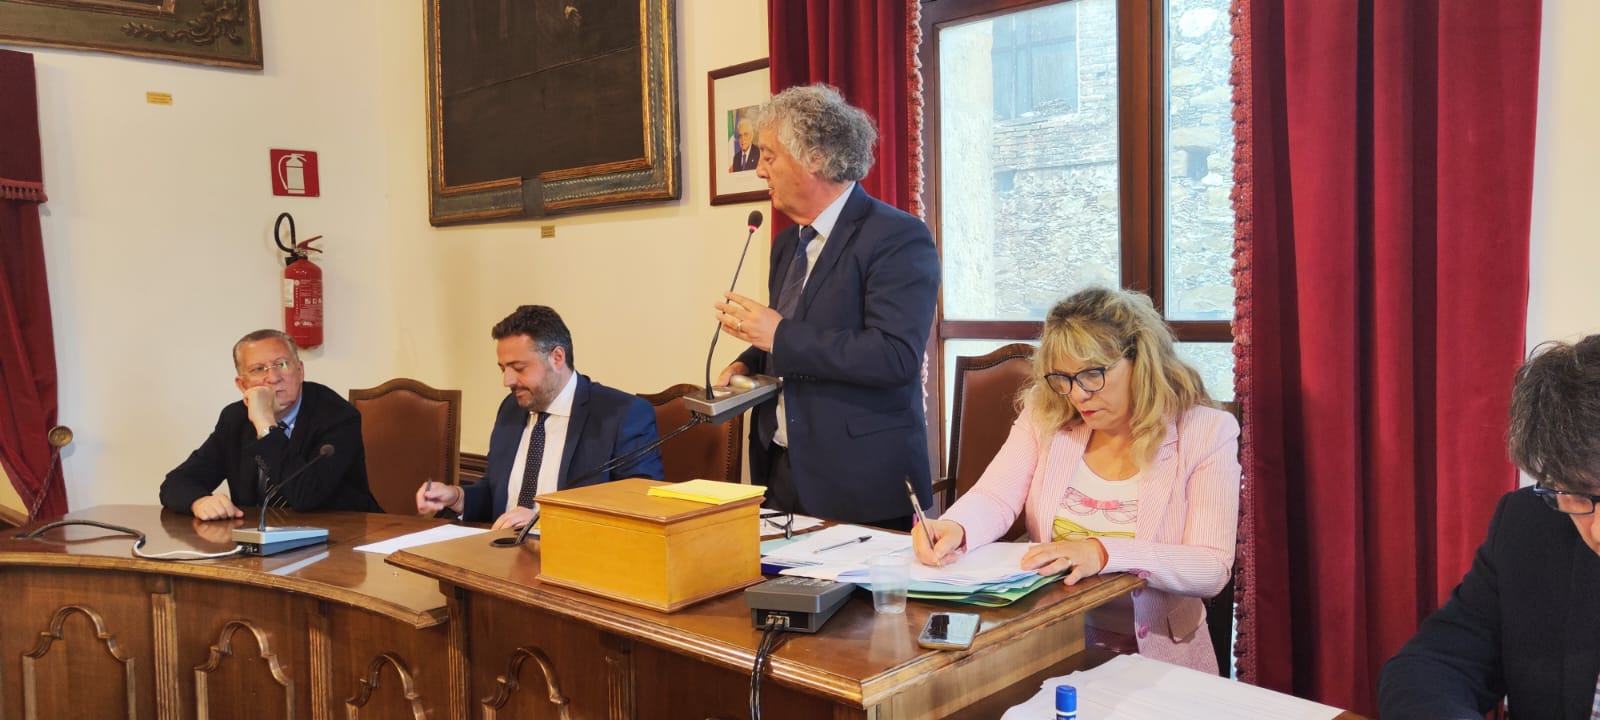 Nuova Legislatura a Piazza Armerina: Calogero Cursale eletto Presidente del Consiglio Comunale